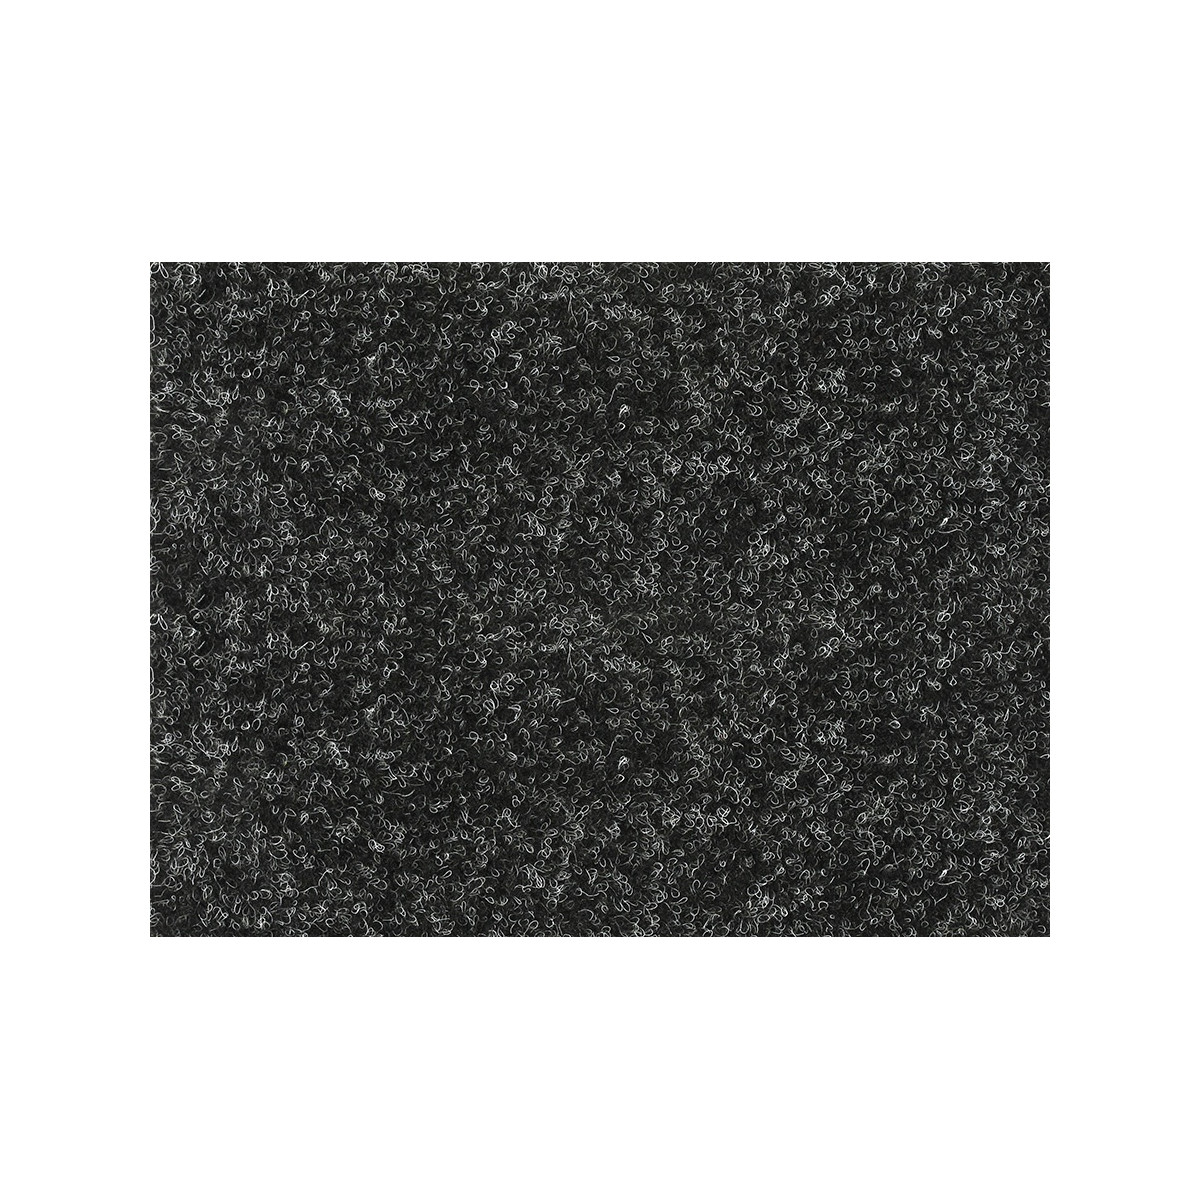 AKCE: 100x400 cm Metrážový koberec Santana 50 černá s podkladem resine, zátěžový